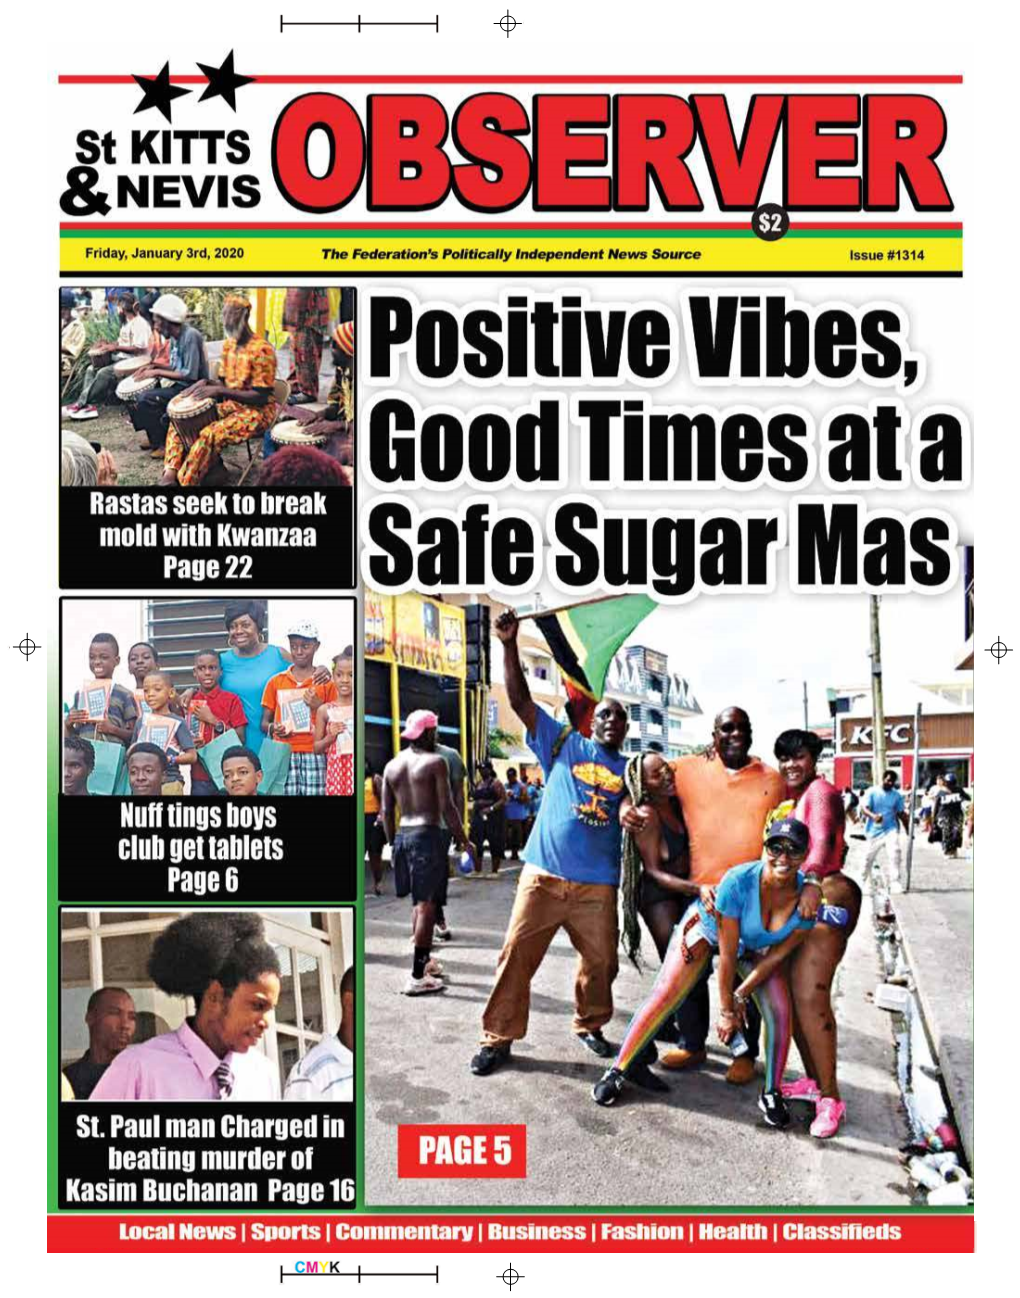 The St Kitts Nevis Observer